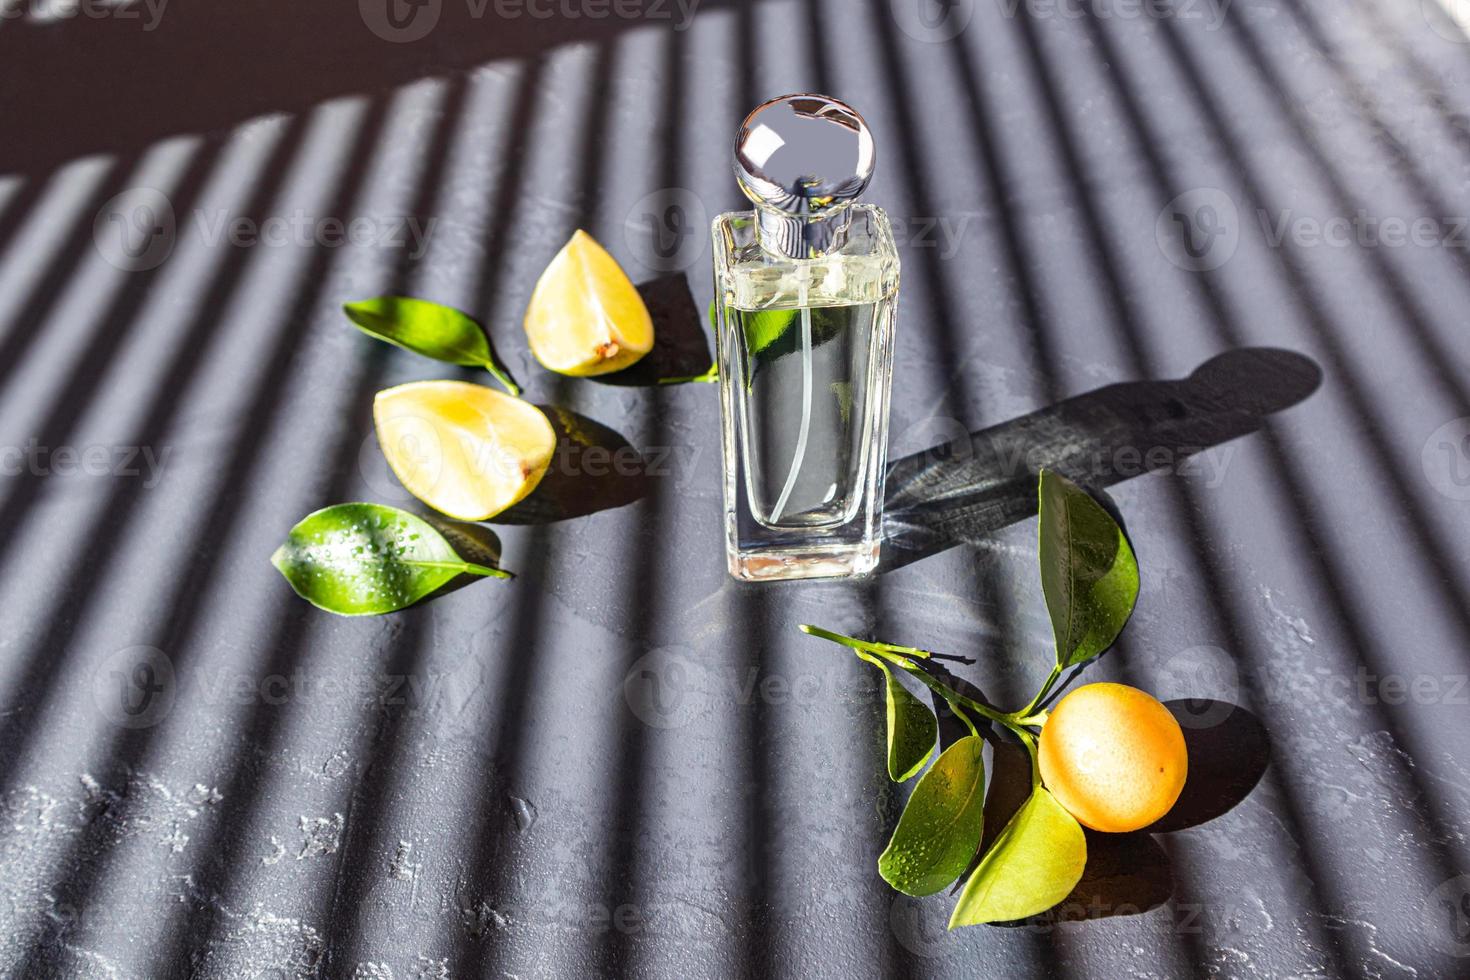 una botella transparente de cosmético con un aroma cítrico natural se encuentra sobre una mesa oscura con sombras paralelas desde las persianas de la ventana. foto